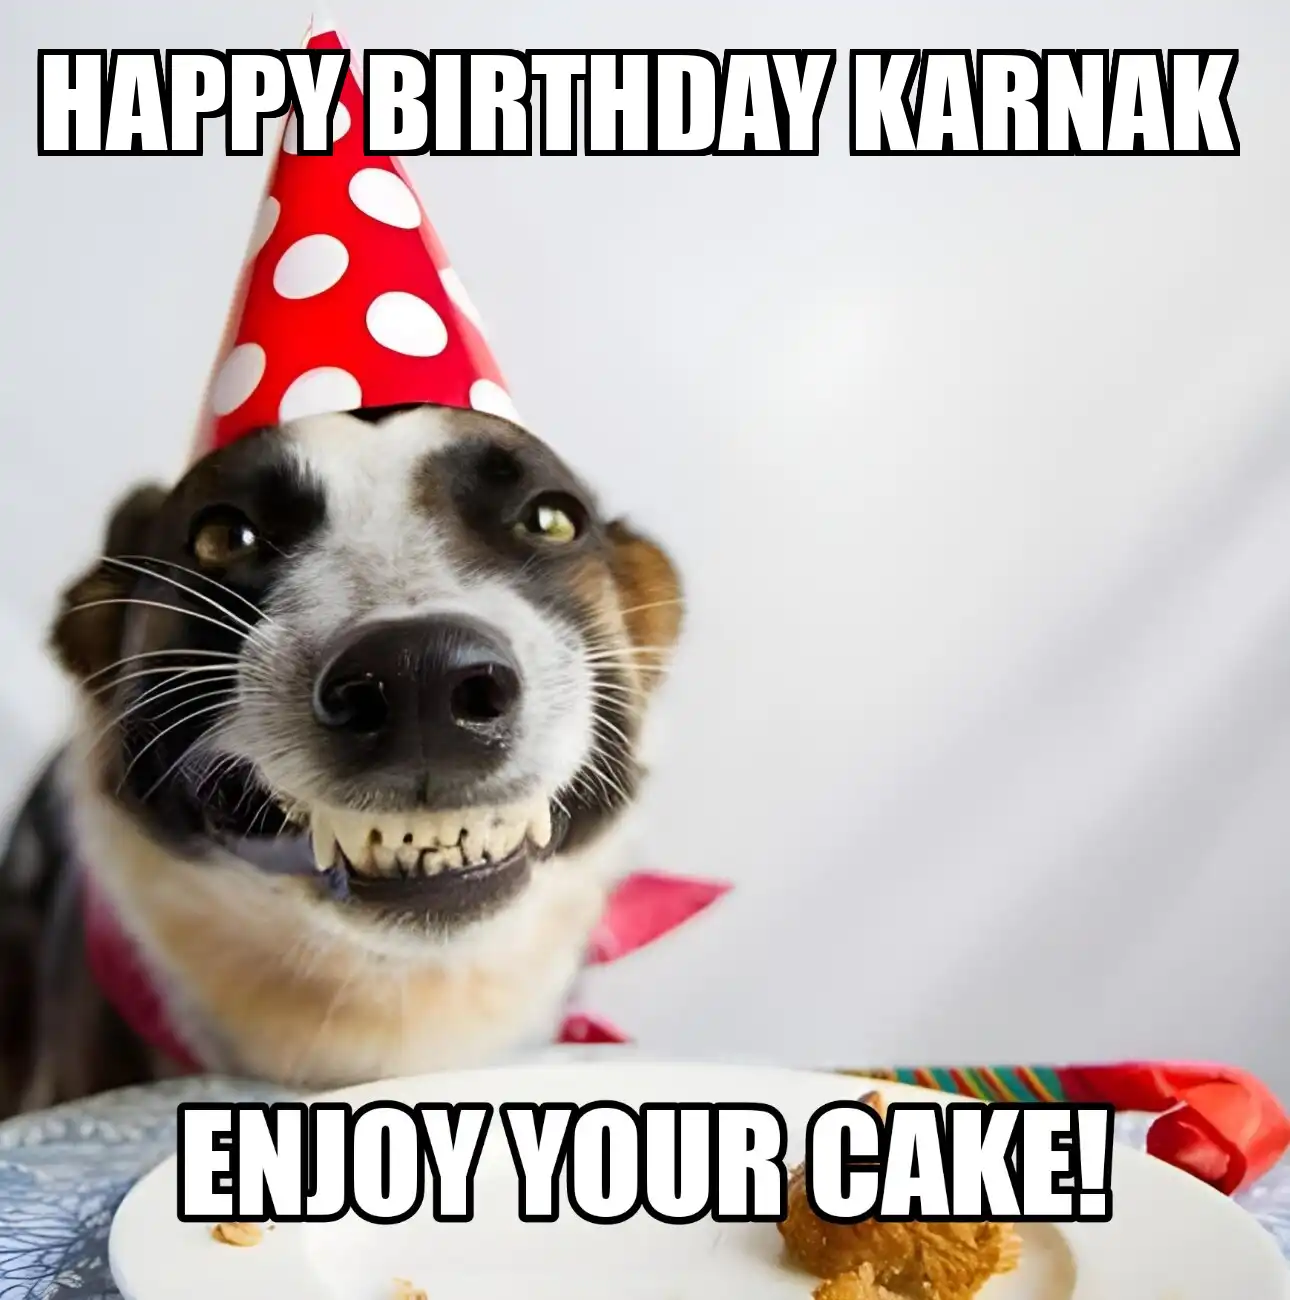 Happy Birthday Karnak Enjoy Your Cake Dog Meme